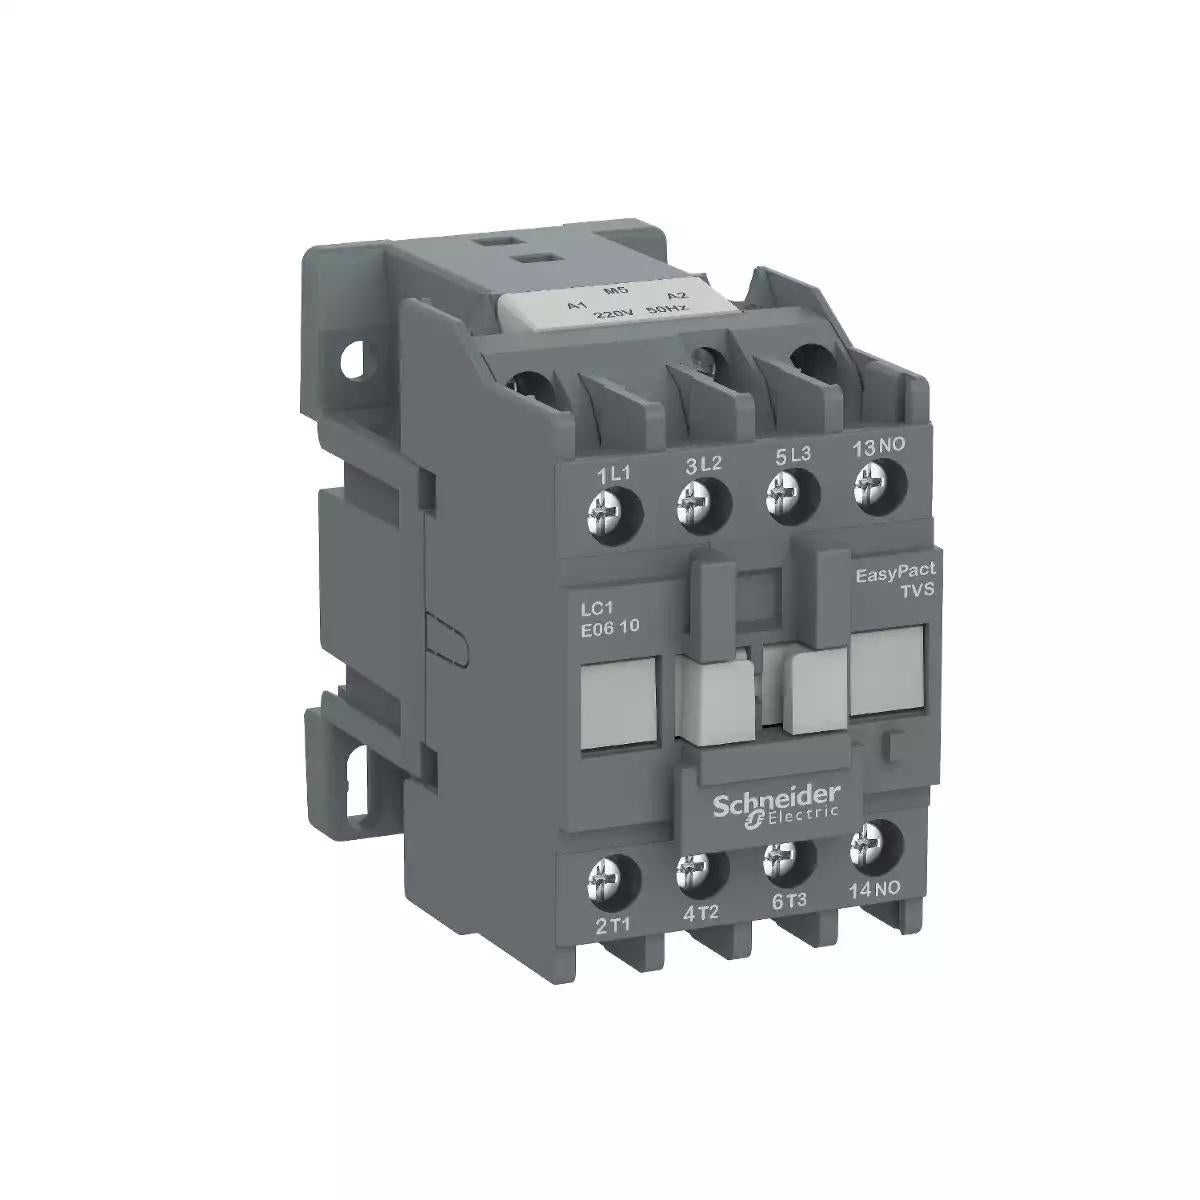 Schneider Electric EasyPact TVS contactor 3P(3 NO) - AC-3 - <= 440 V 18A - 220 V AC coil